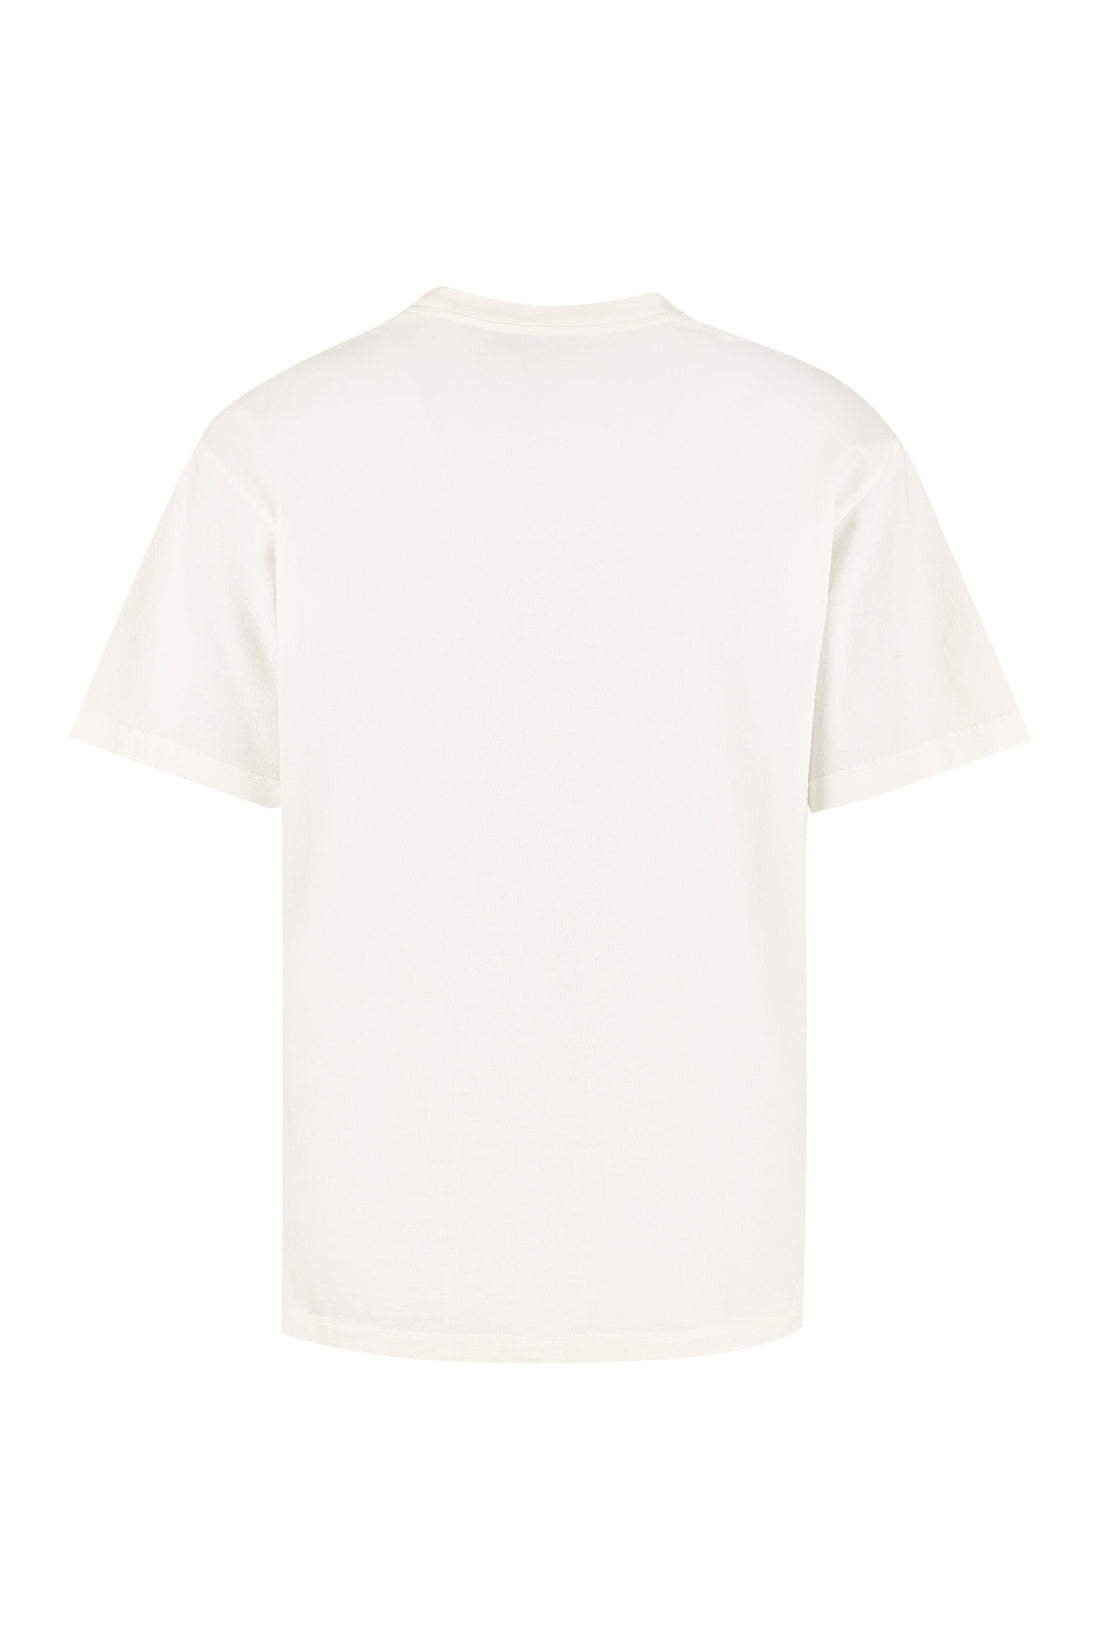 Golden Goose-OUTLET-SALE-Printed cotton t-shirt-ARCHIVIST